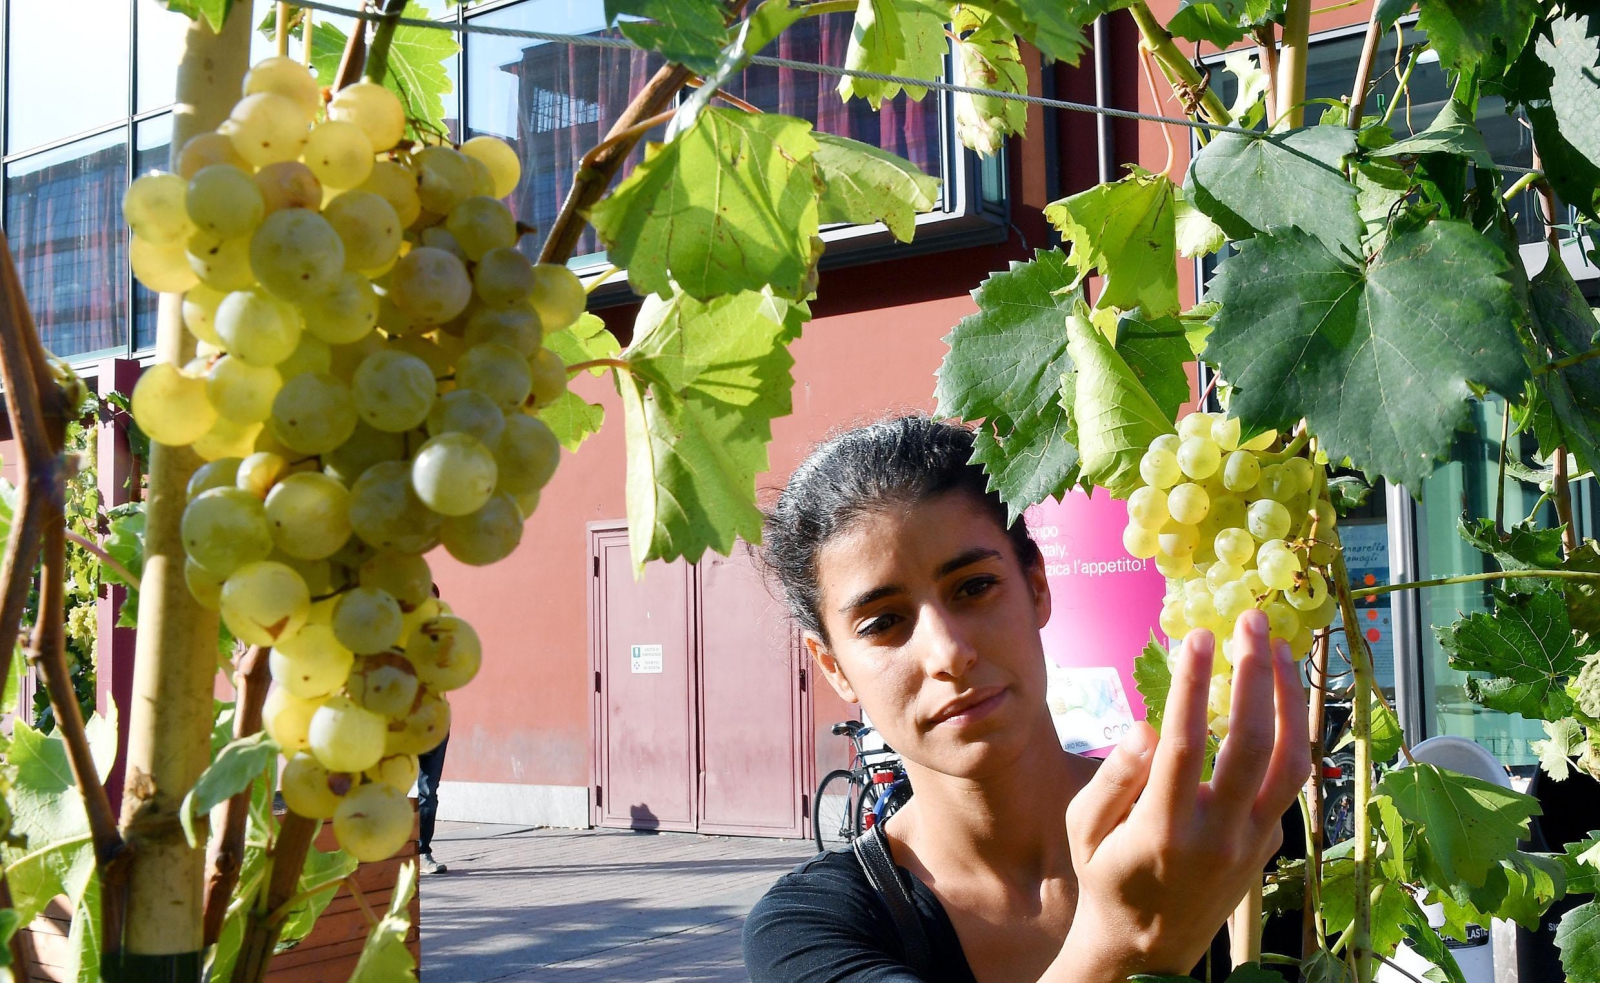 Dojrzewające winogrona we Włoszech. fot. EPA/Alessandro Di Marco